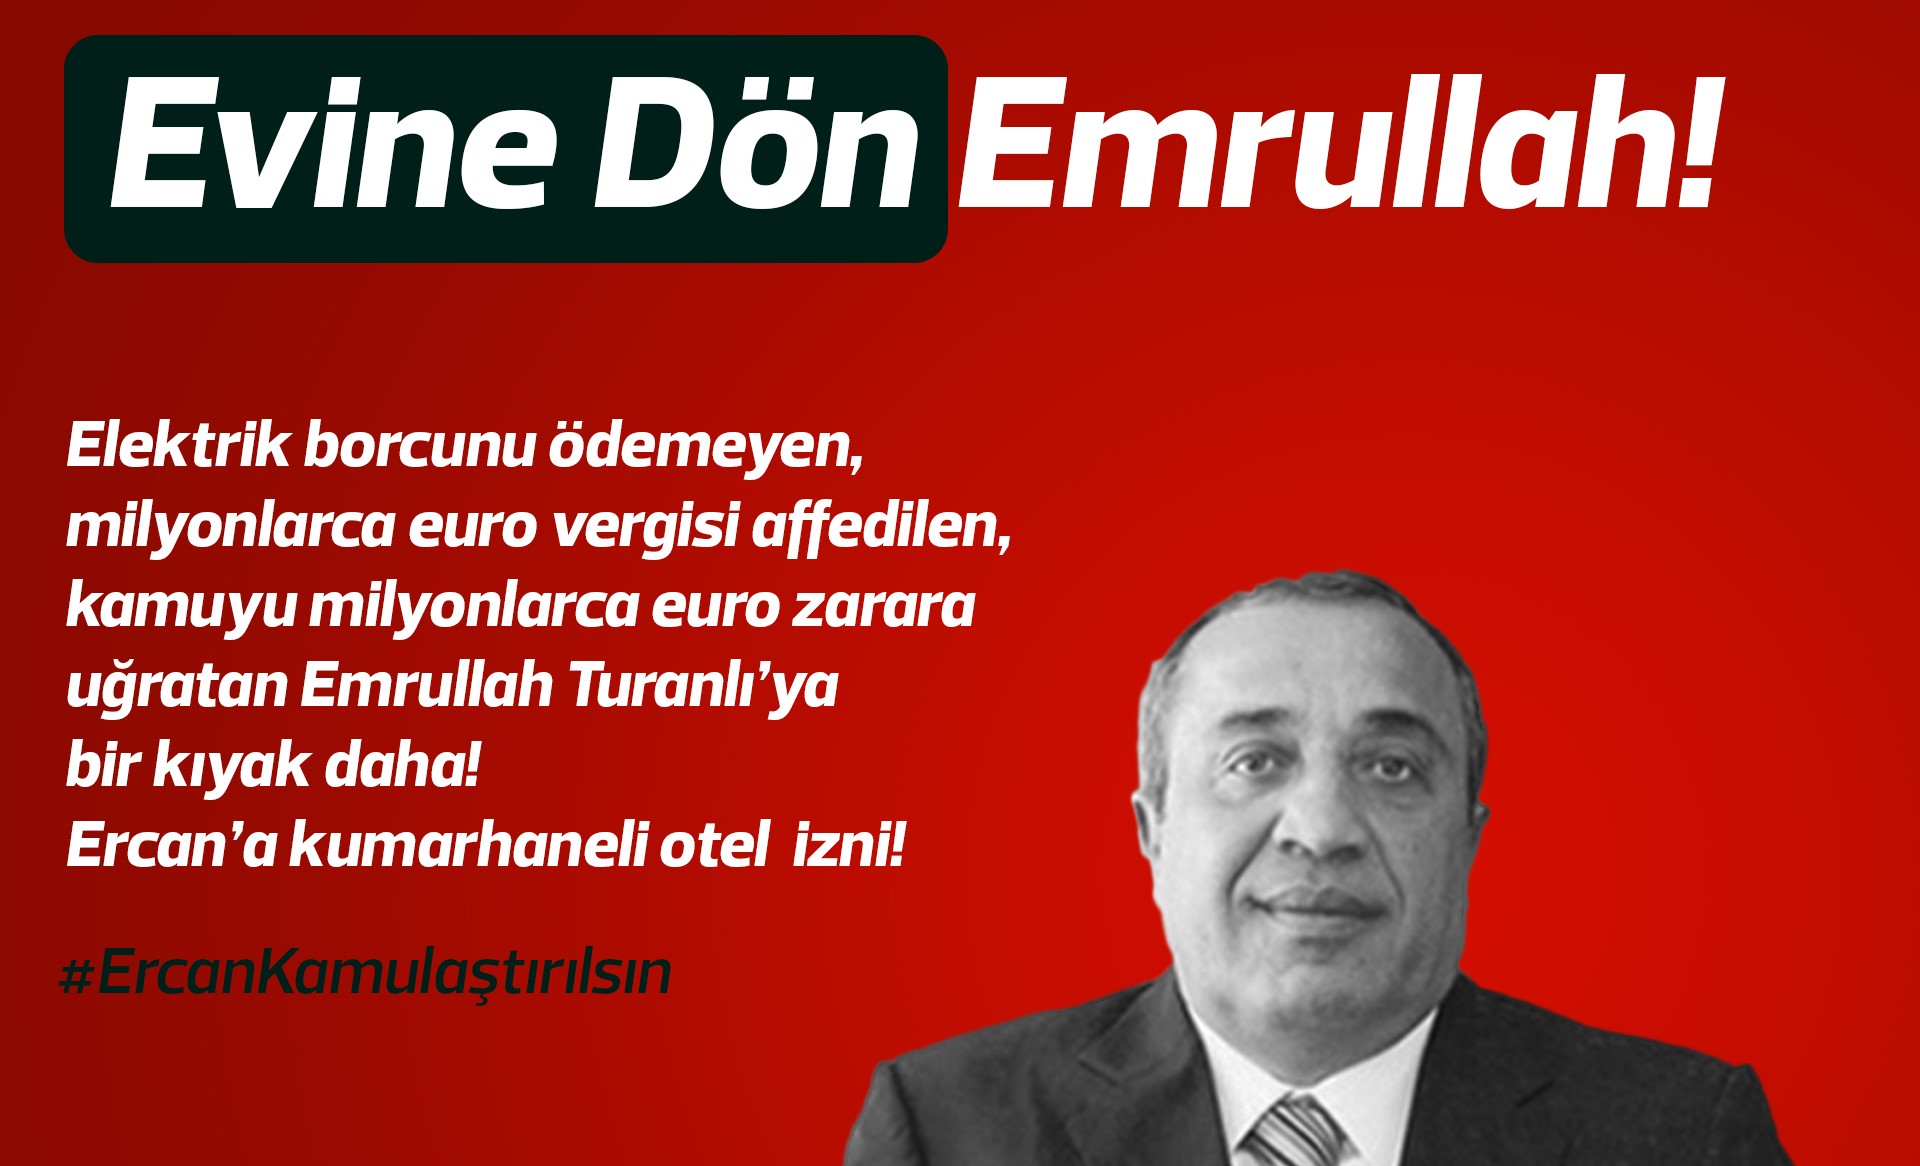 Bağımsızlık Yolu'ndan Ercan’daki kumarhane otel iznine tepki: Evine dön Emrullah!